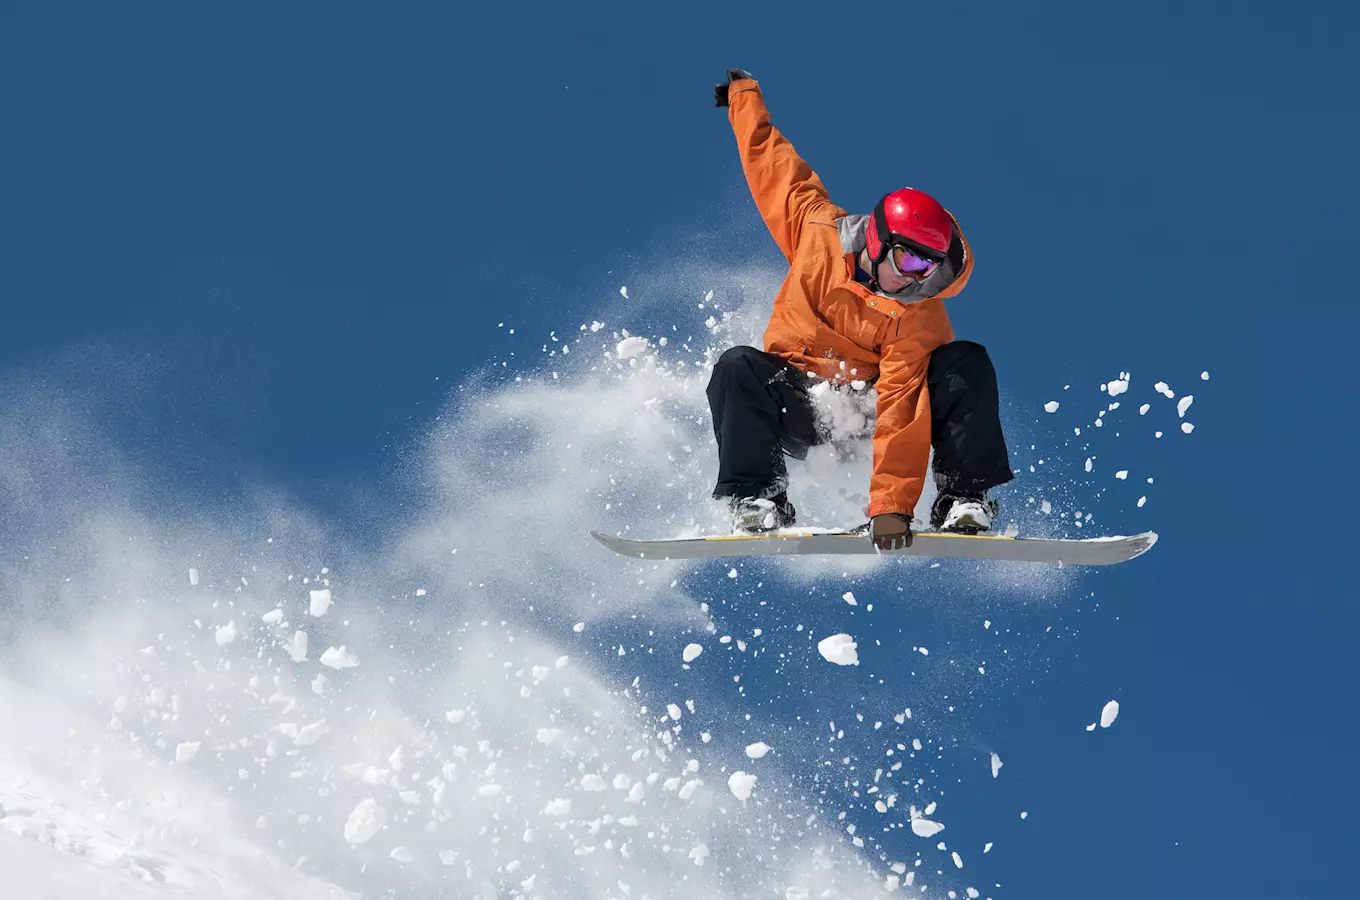 Evropský pohár ve snowboardingu v Mariánských Lázních